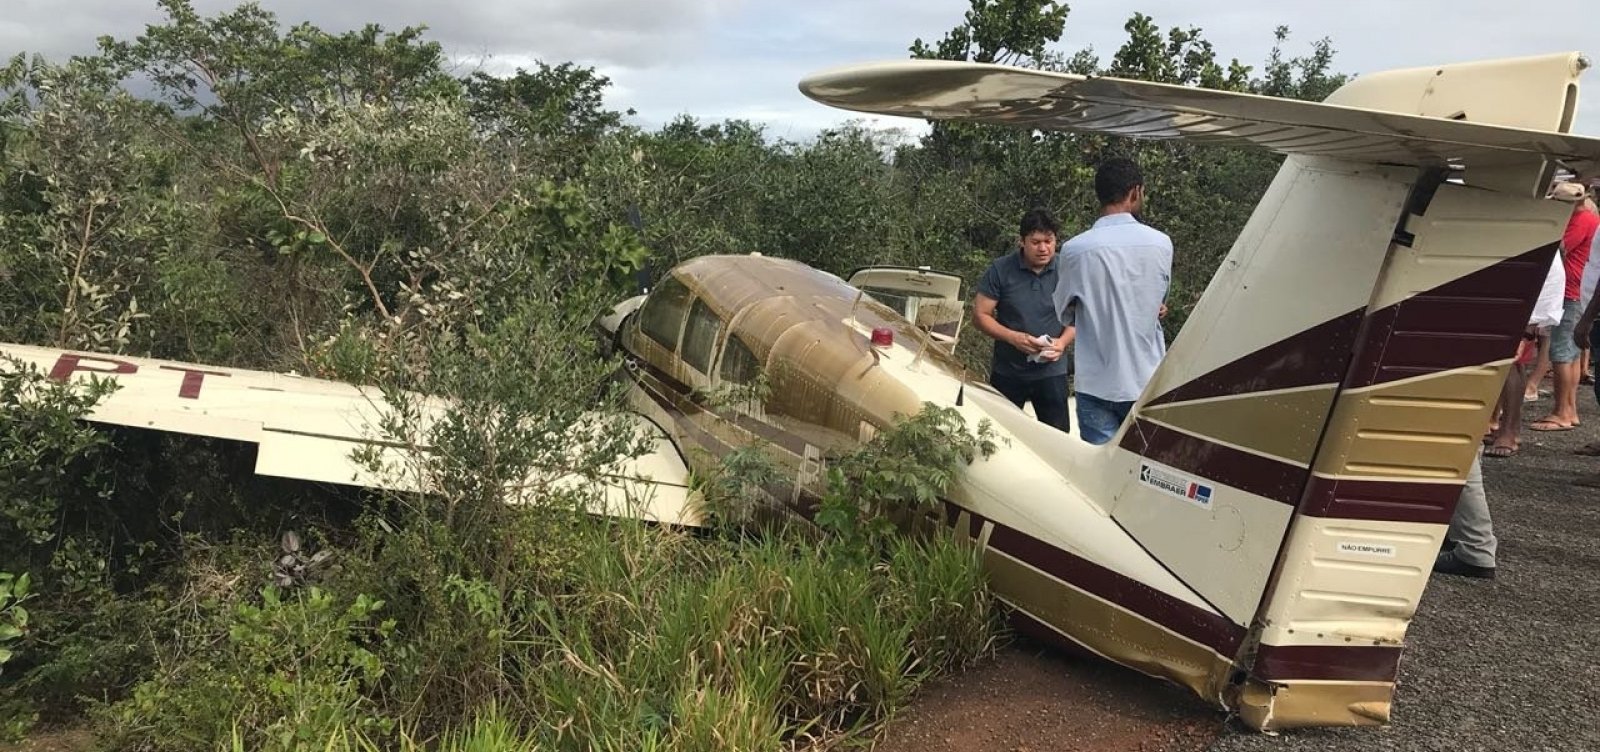 Avião aterrissa na BR-110 entre as cidades de Inhambupe e Olindina